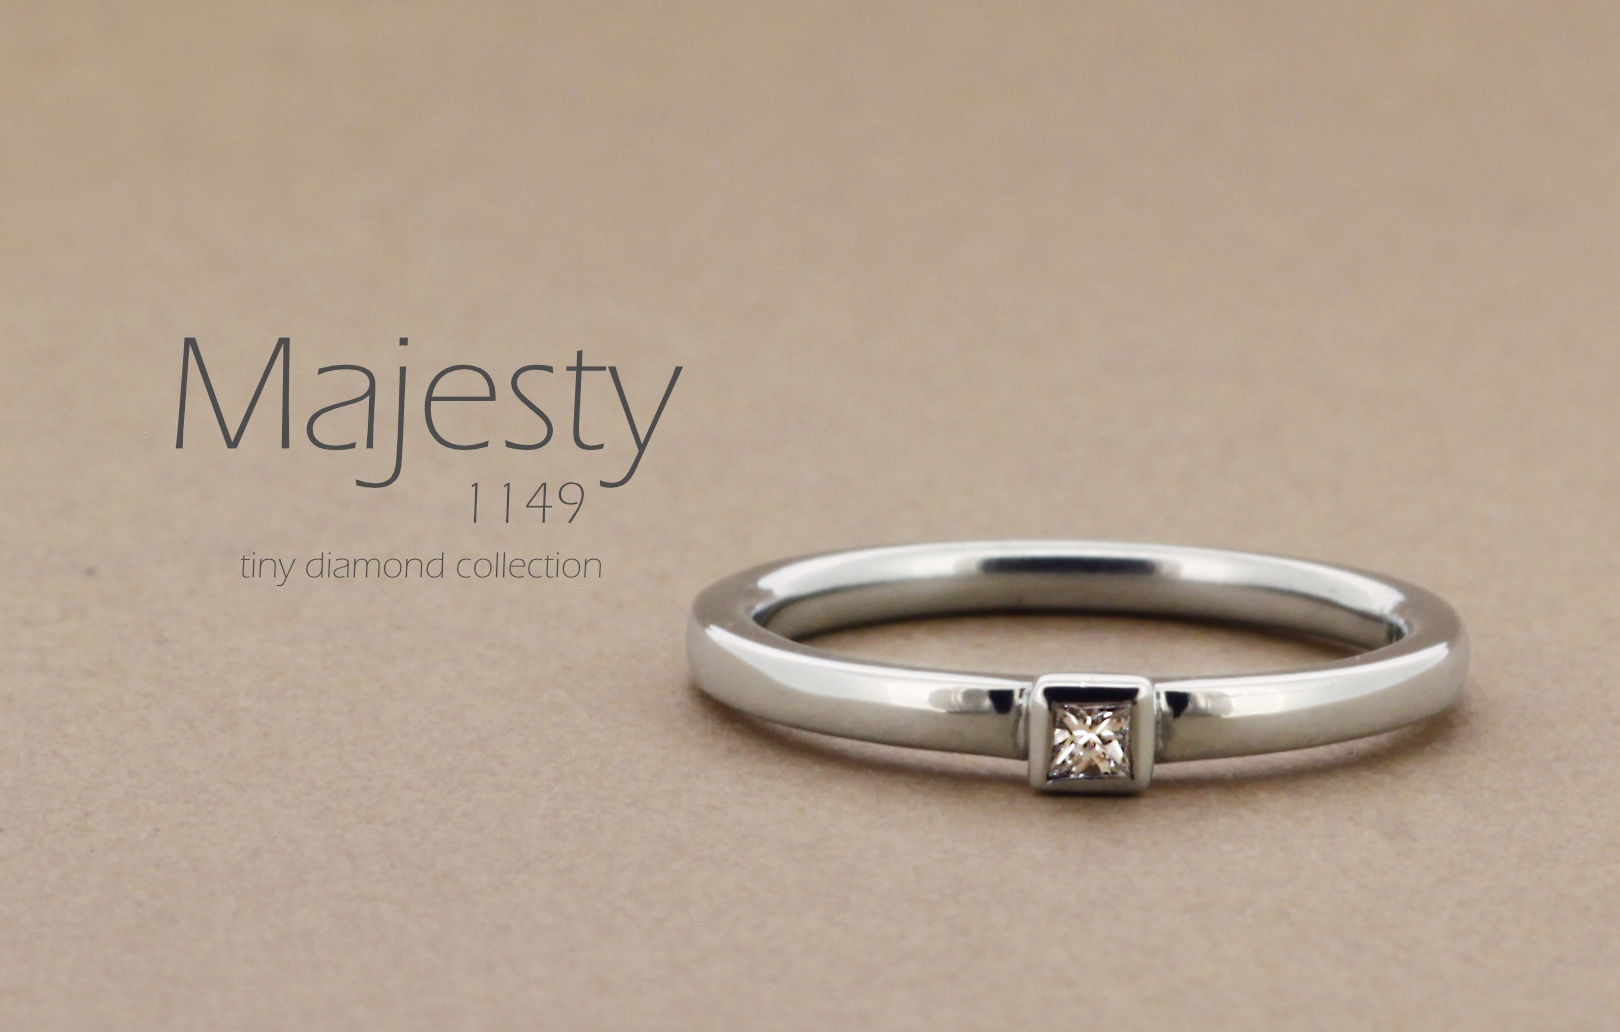 「Majesty」という名前が付いた、シンプルなアームにプリンセスカットのダイヤモンドを留めた指輪の詳細ページ